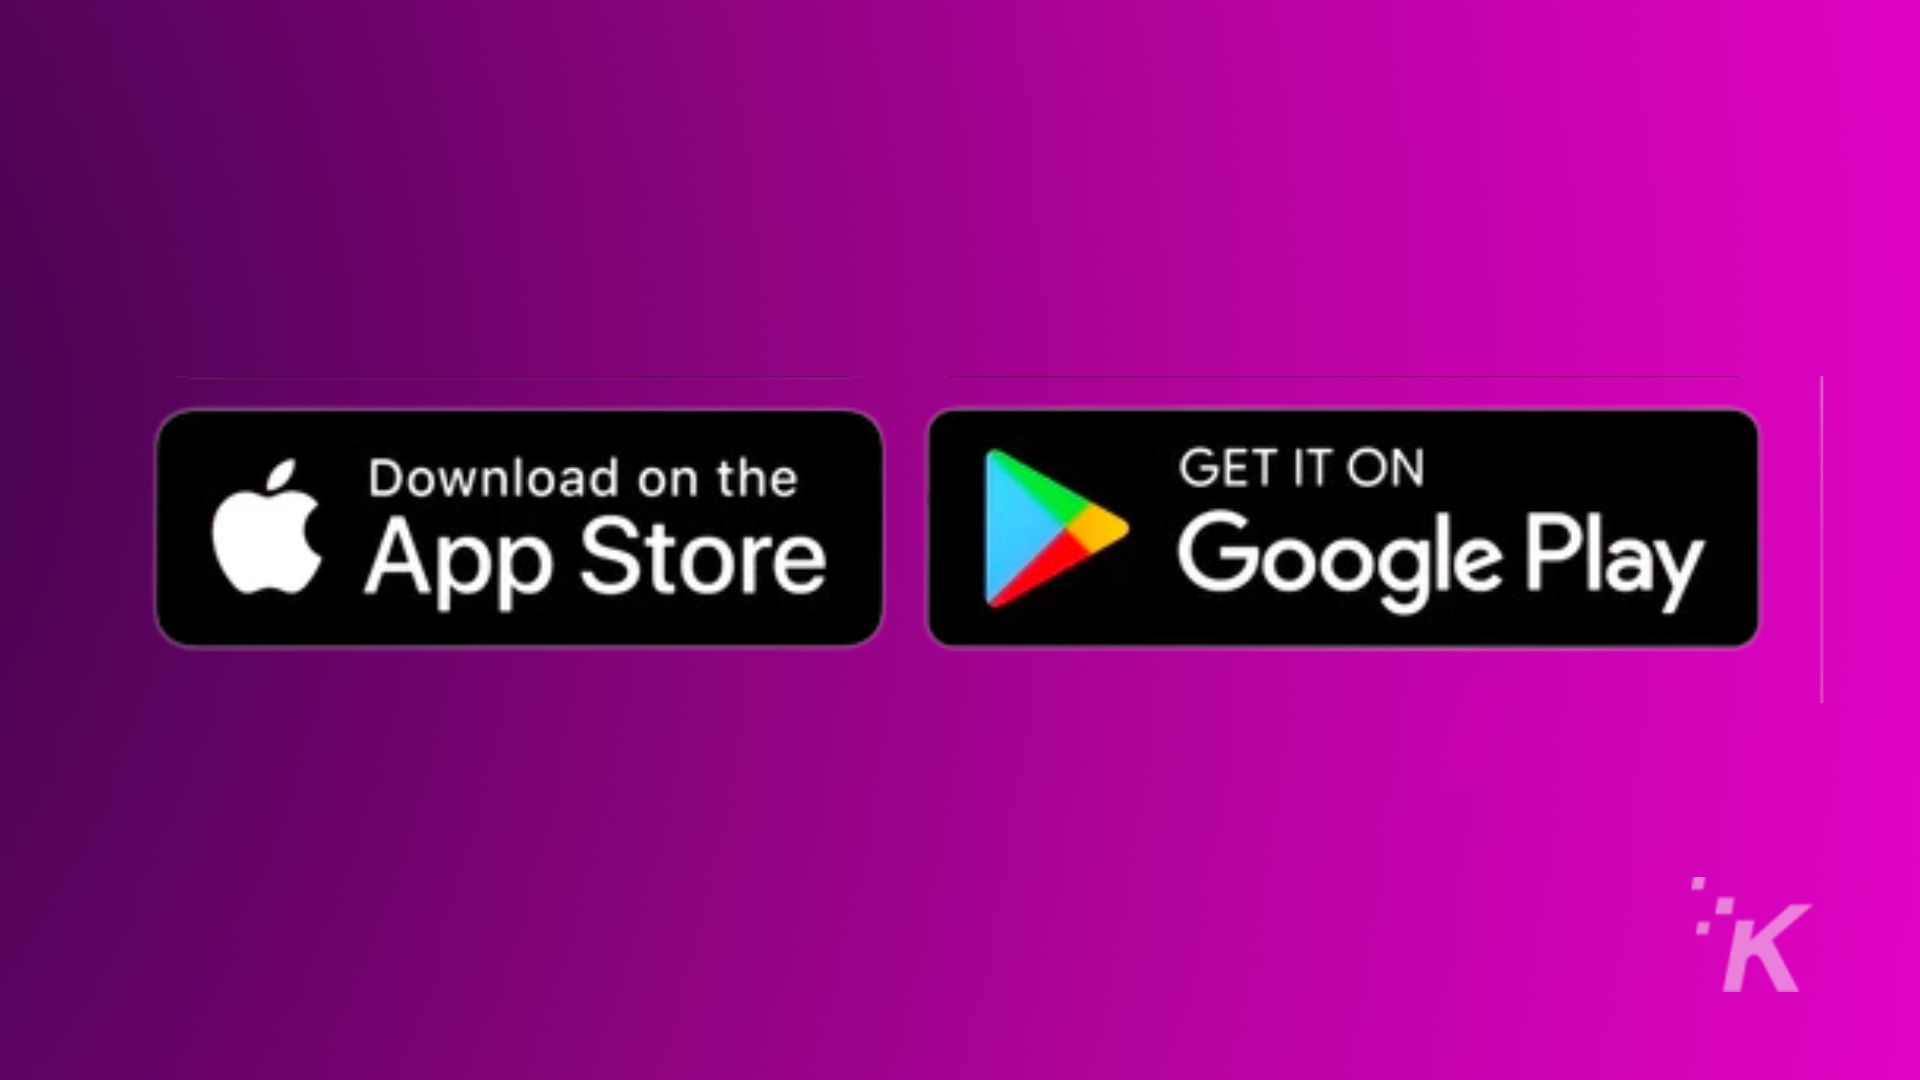 A imagem está promovendo a disponibilidade de um produto na App Store e no Google Play. Texto Completo: Baixe na App Store GET IT ON Google Play IK